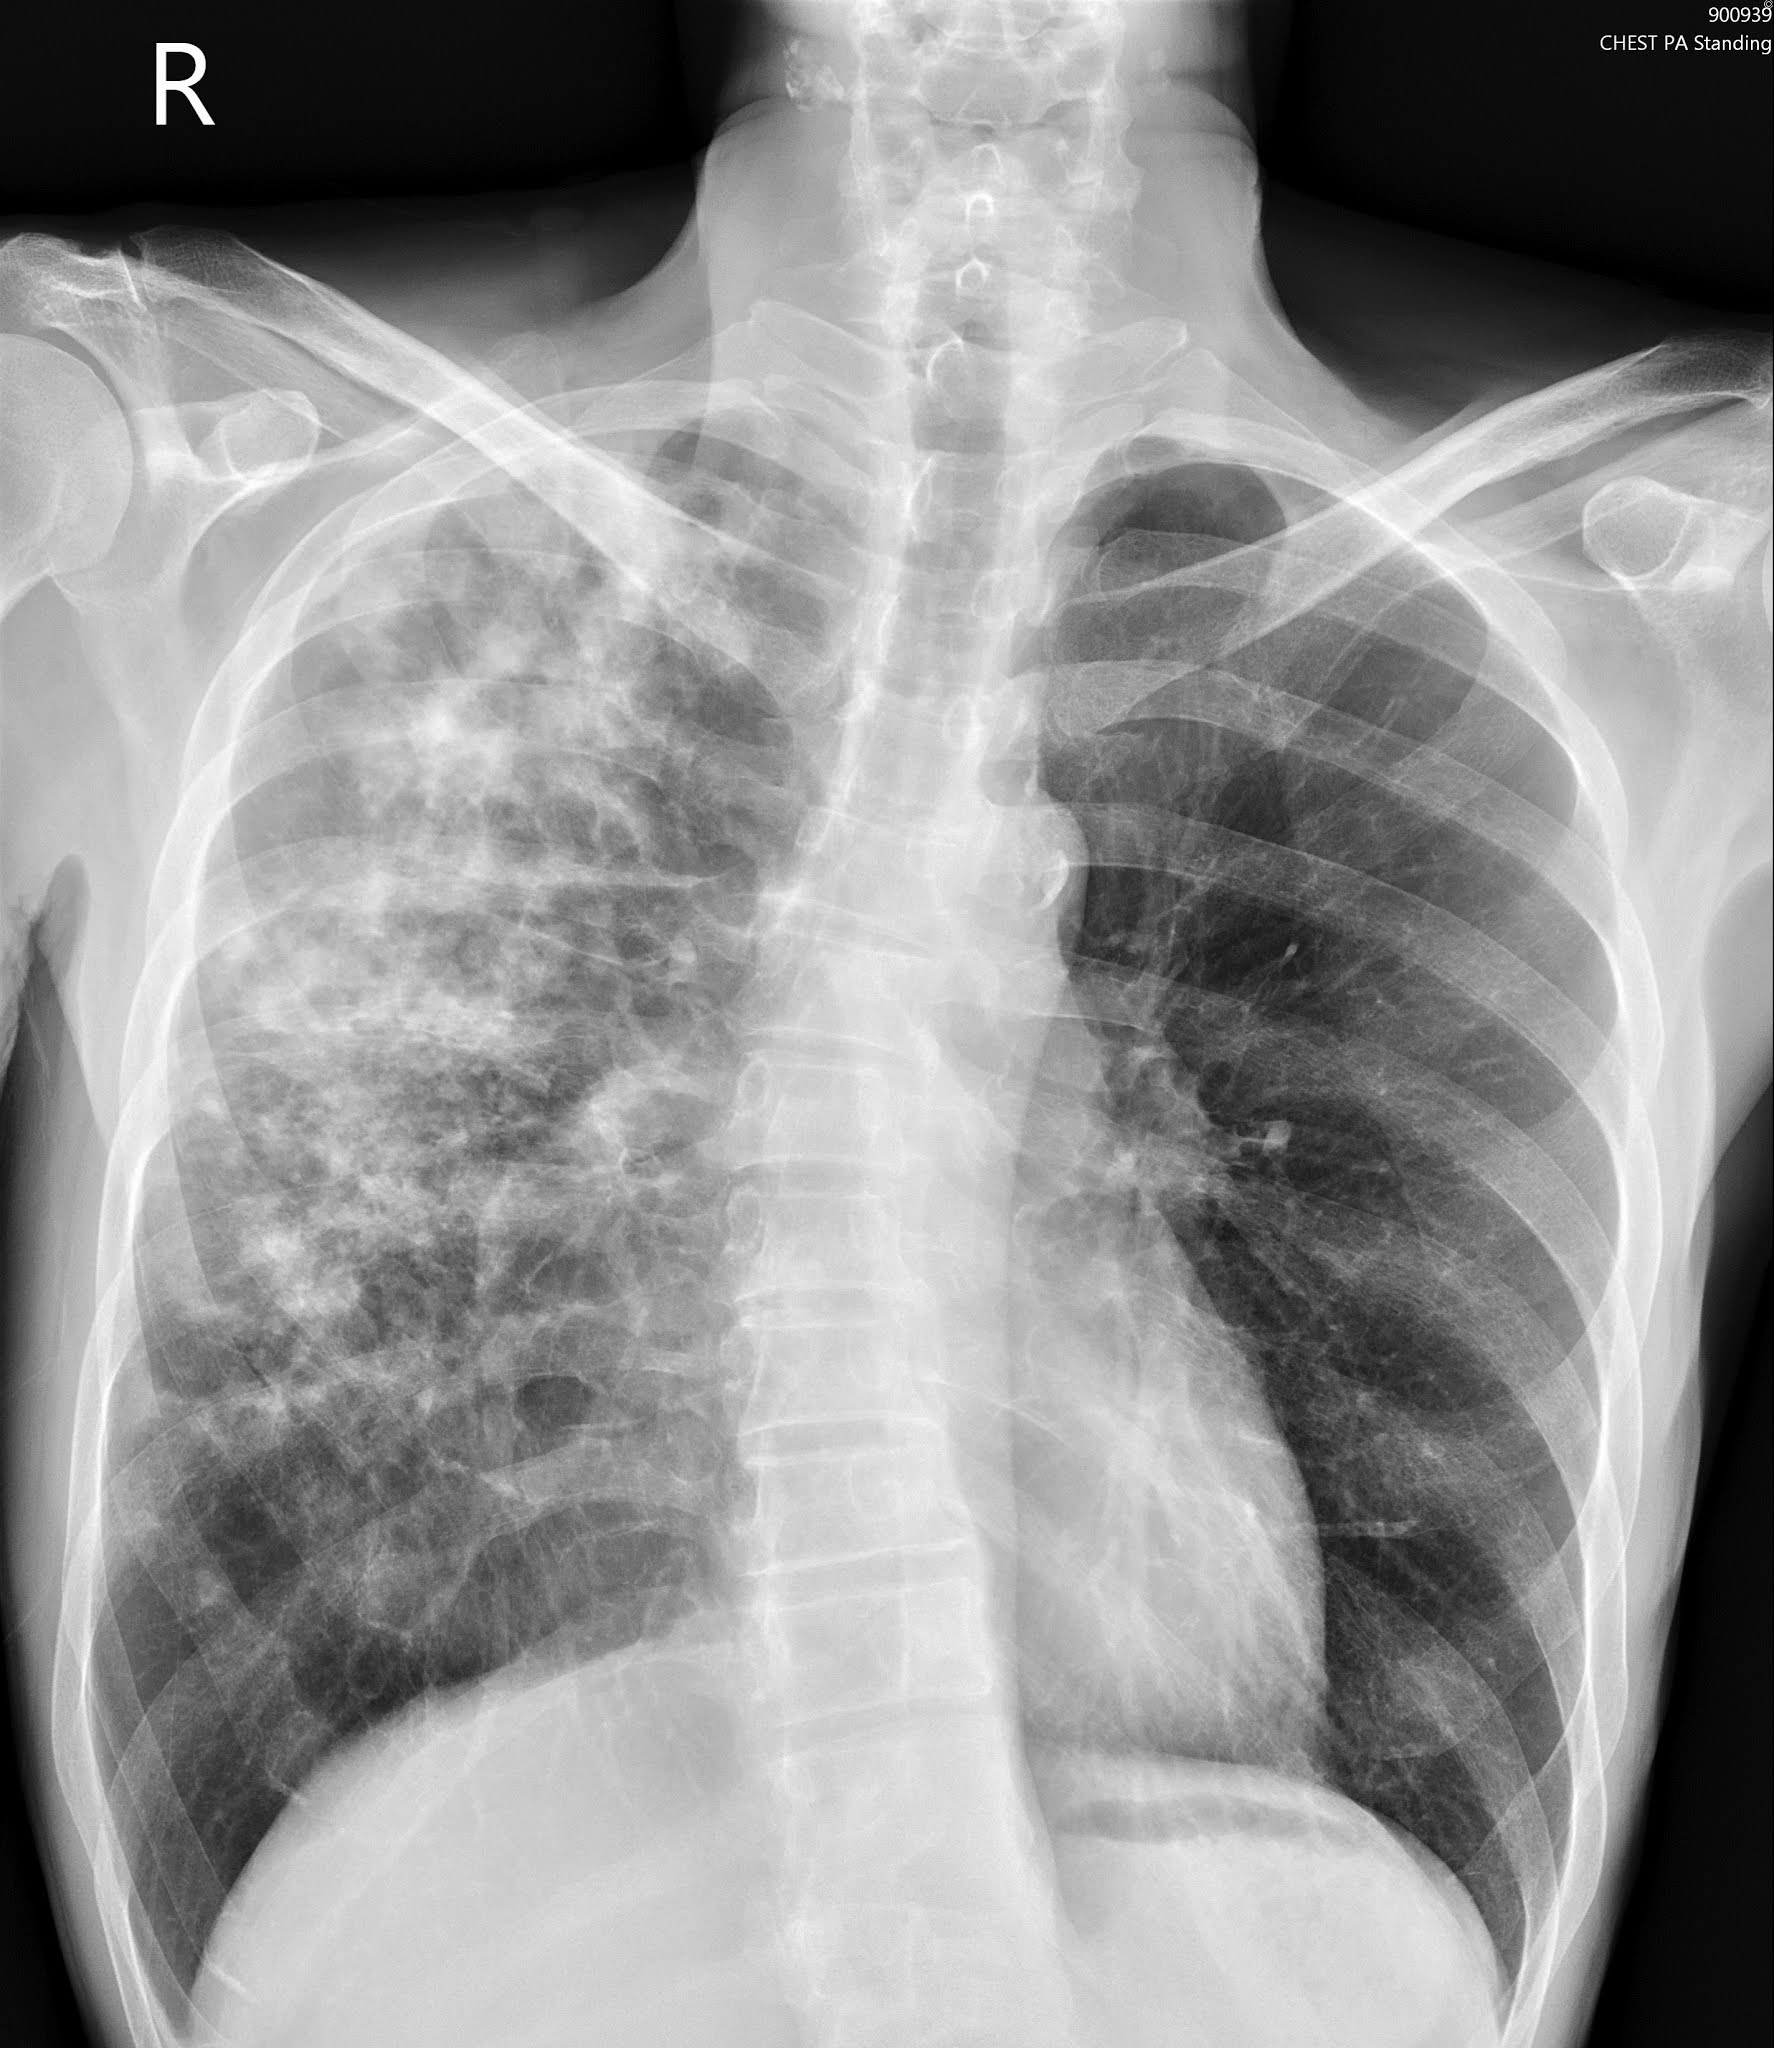 Tensorflow2.0 医学图像分类(X光胸片肺炎图像诊断) - 肺部胸片图片 - 实验室设备网